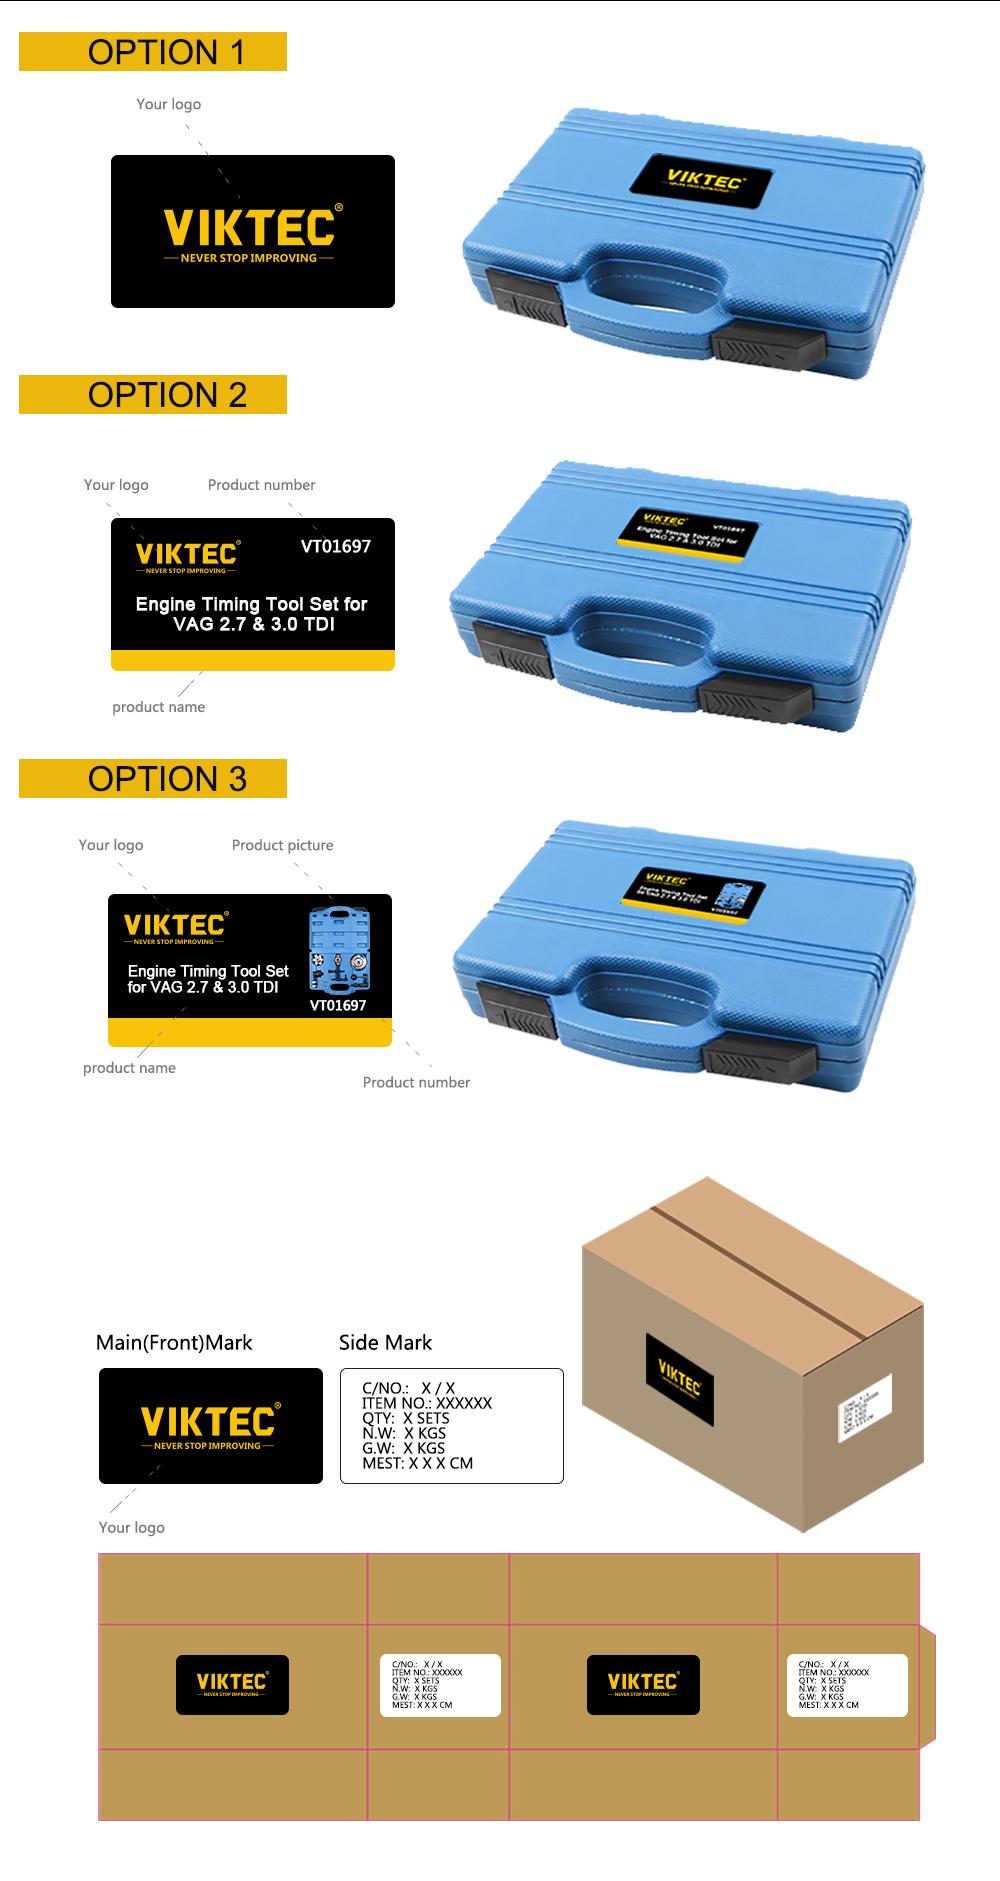 Viktec CE 33PCS Radiator & Cap Pressure Test Kit Radiator Tester (VT01064E)